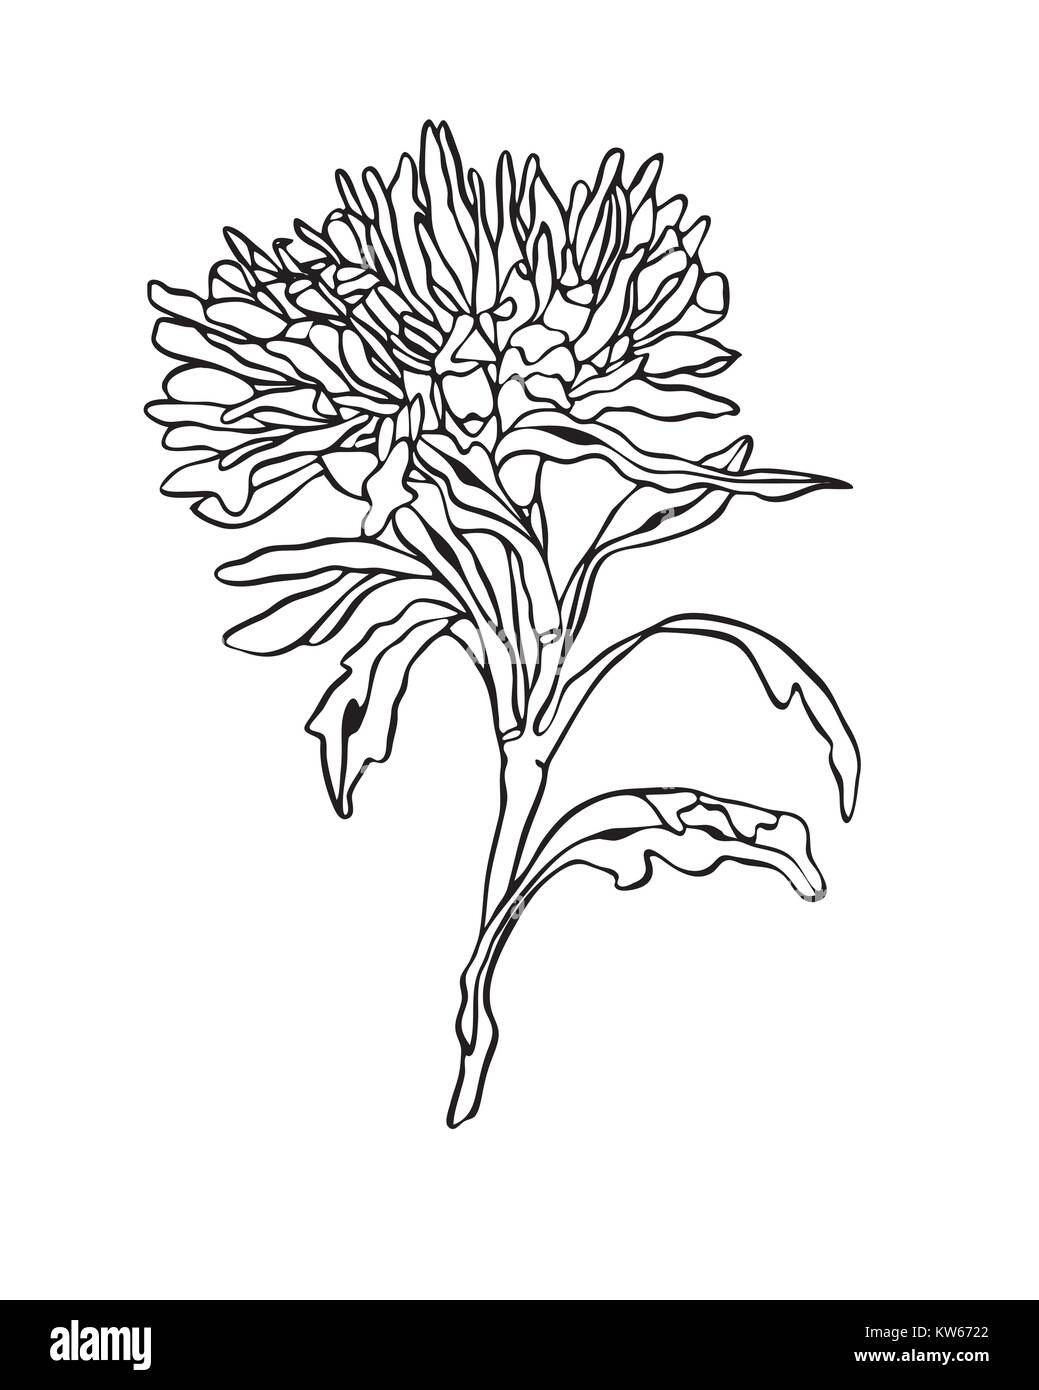 Vector Illustration Aster Blume mit Blättern im Jugendstil Stock Vektor